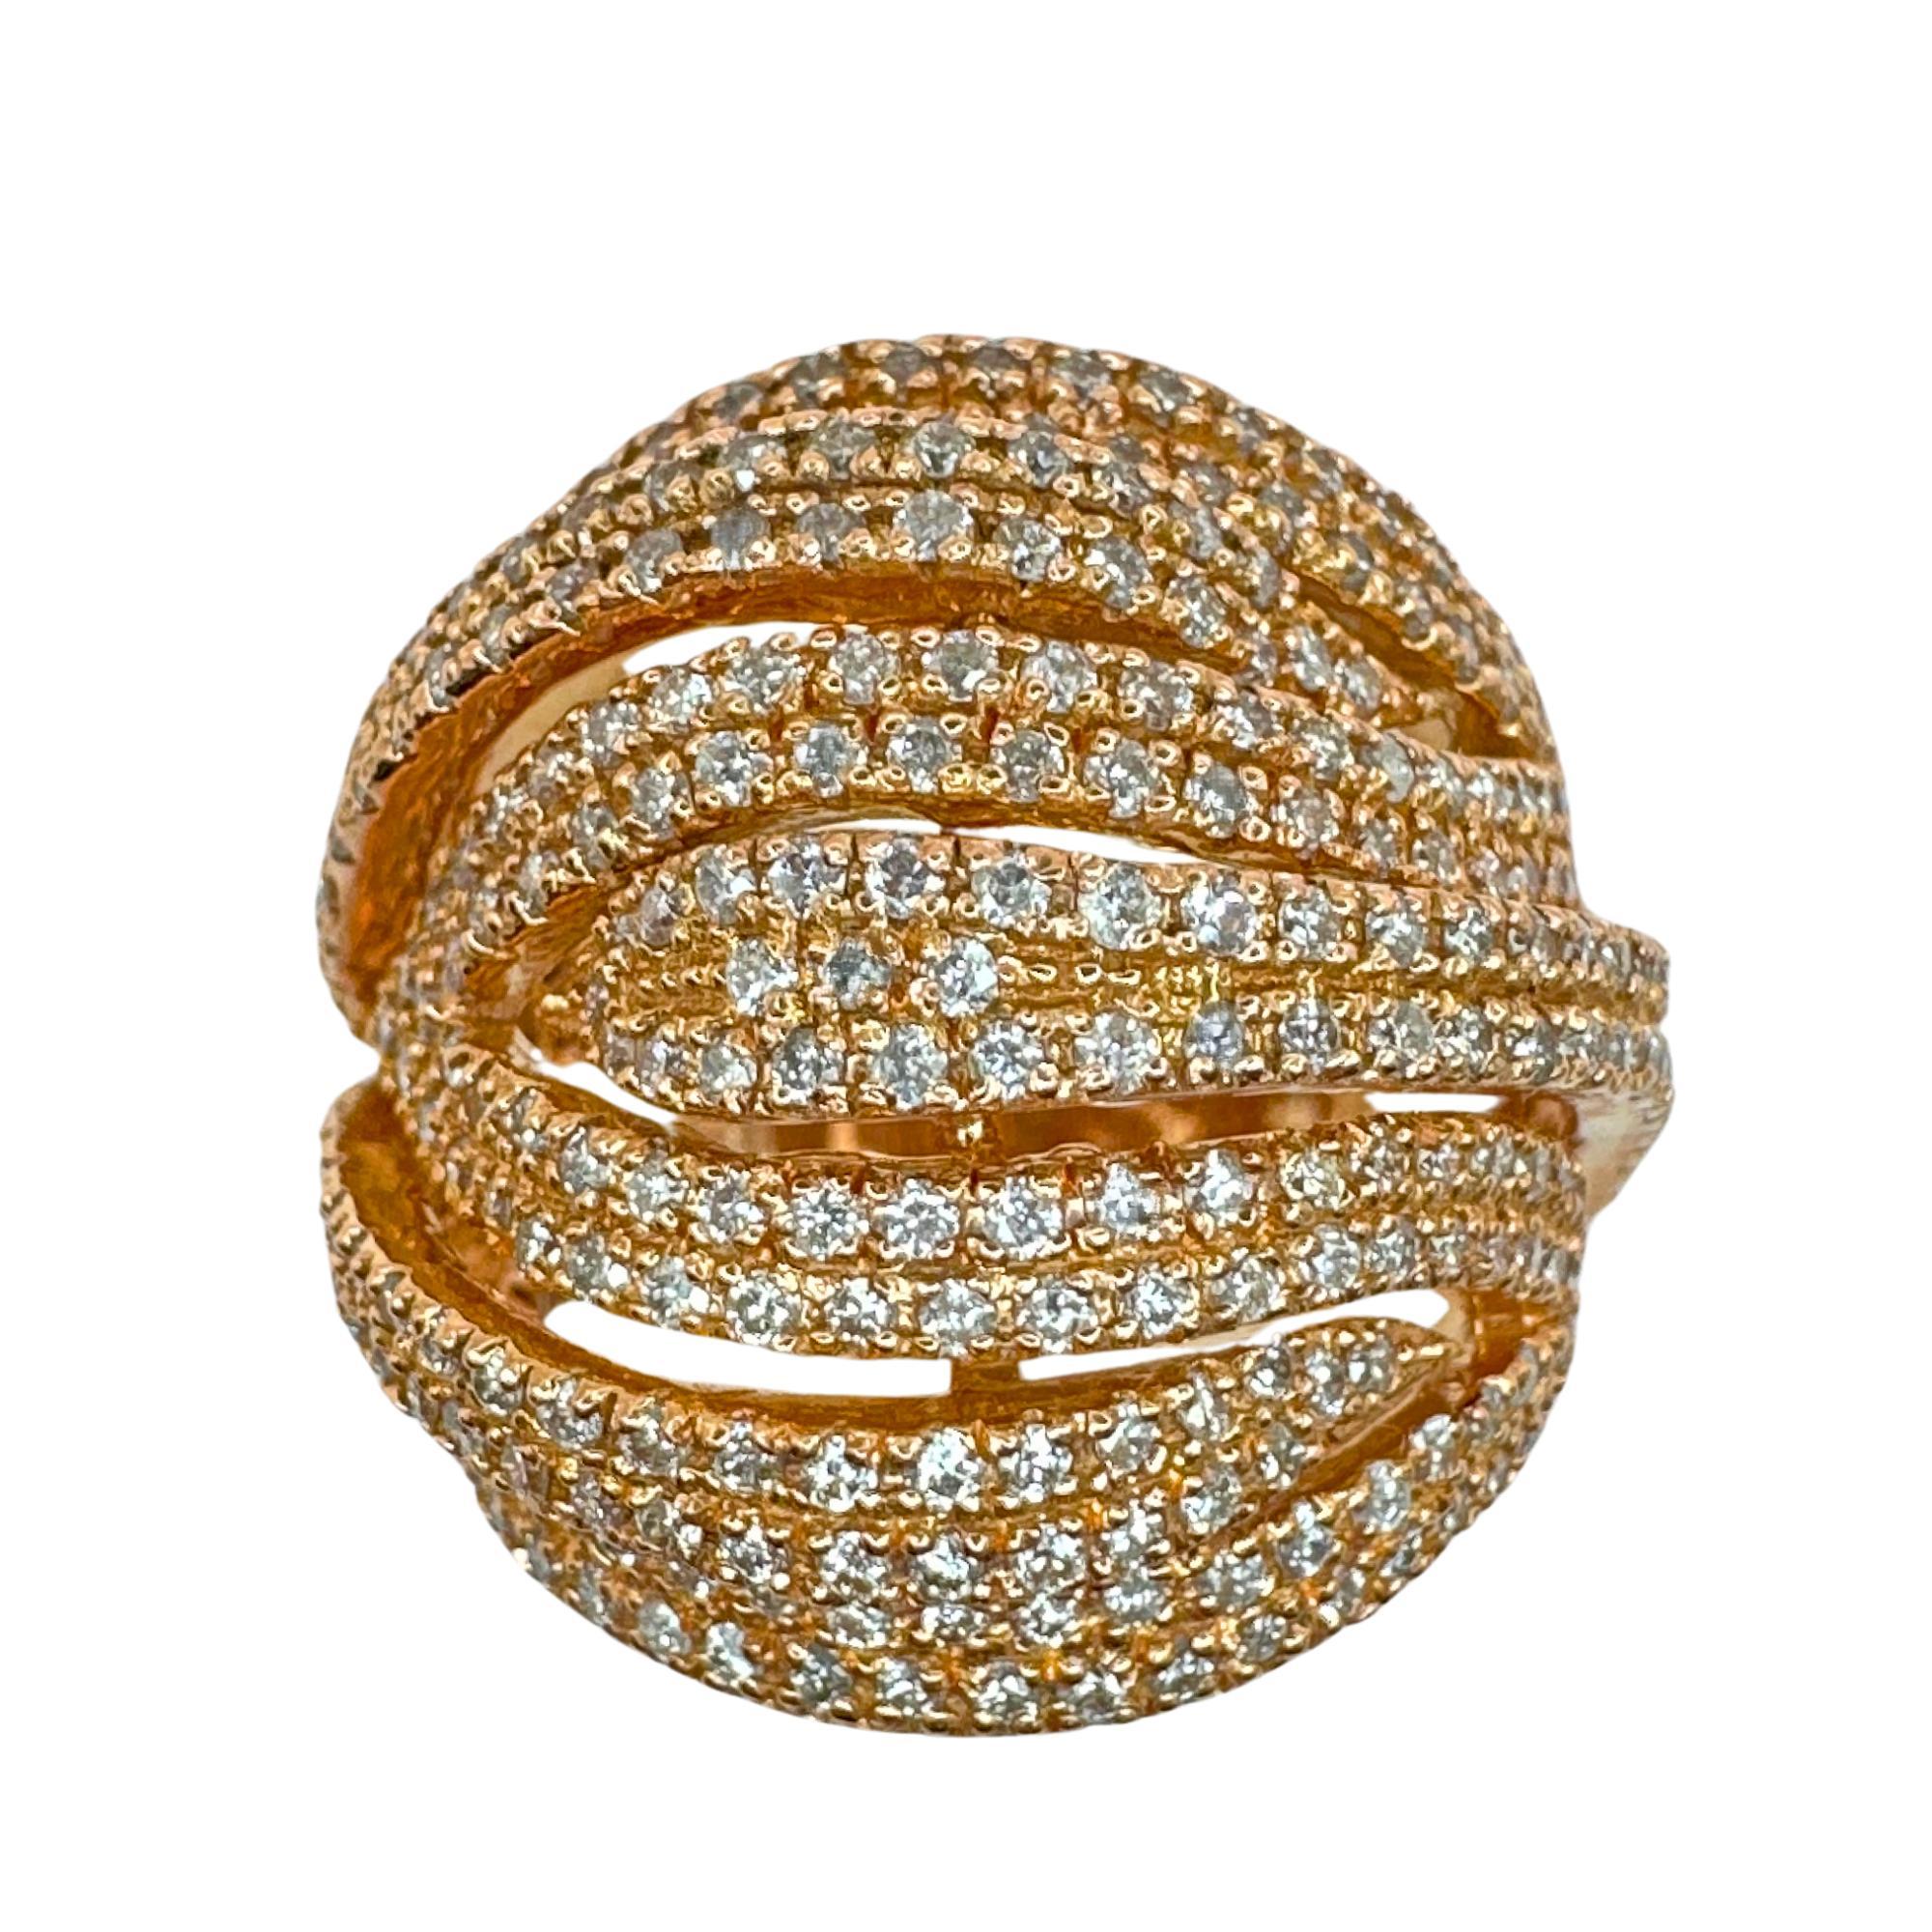 Incarnez l'élégance et la sophistication avec notre bague à large bande de diamants en or rose 14k. Cette magnifique pièce présente un anneau de 13,18 mm de large en or rose 14k, marqué 